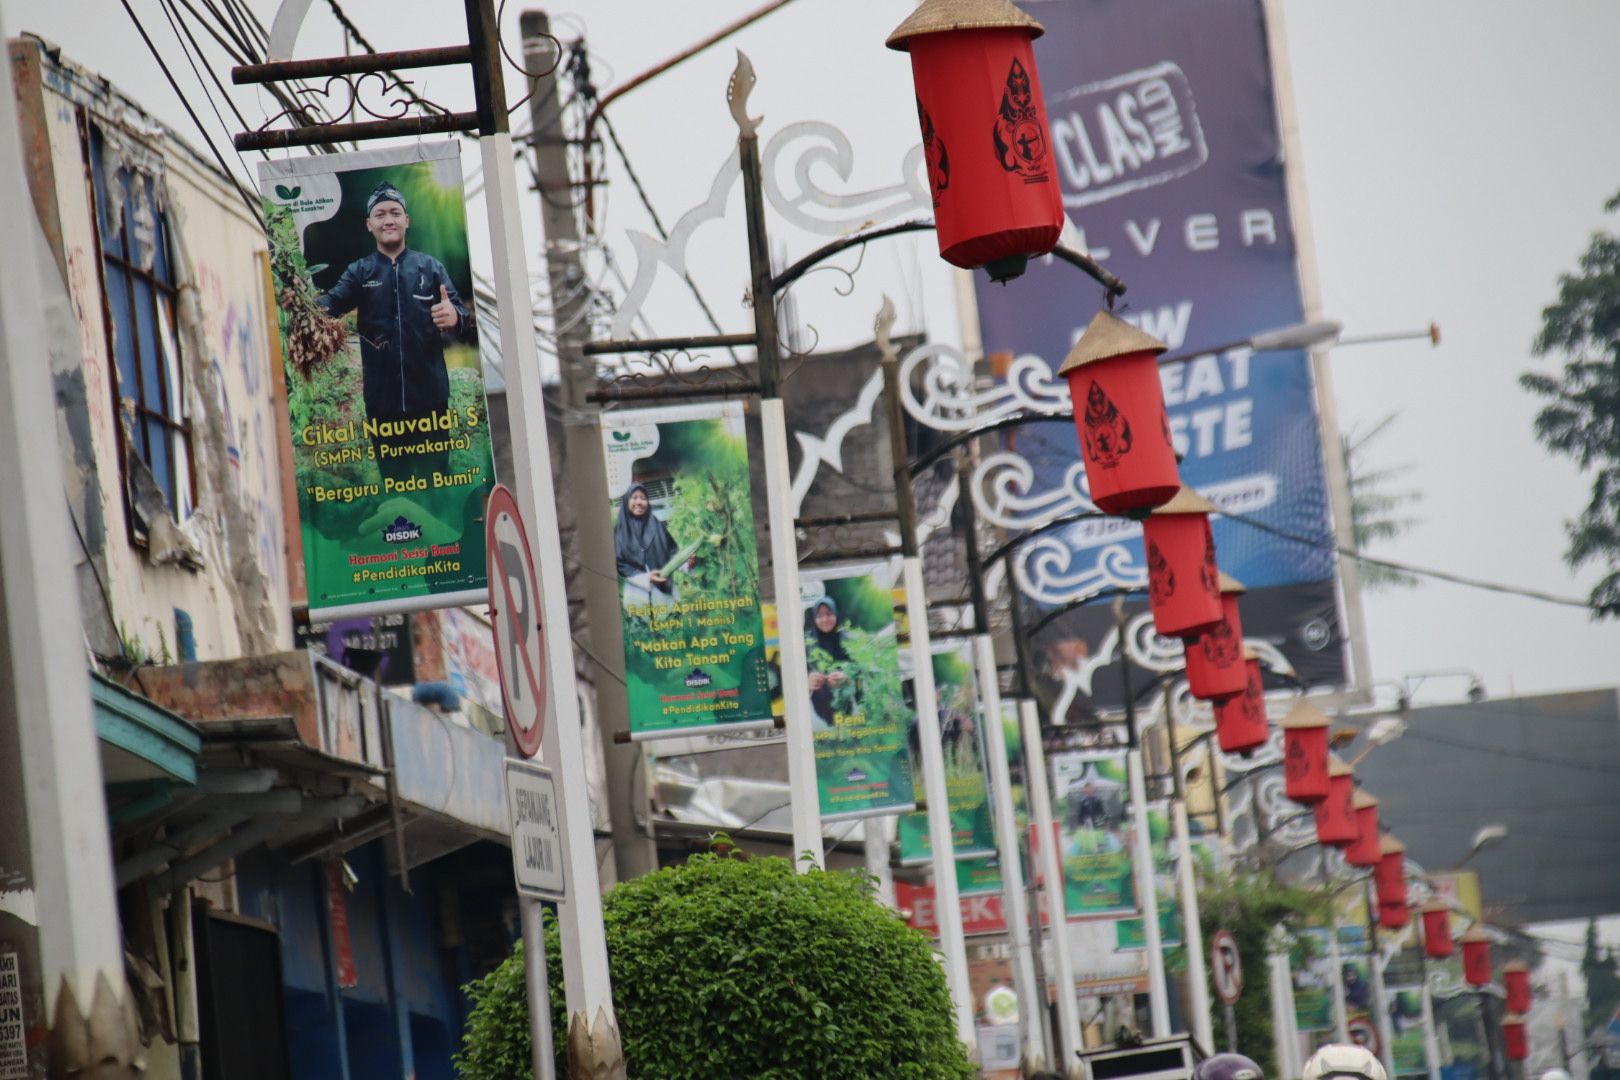 Siswa Berprestasi Sepanjang Jl Veteran 